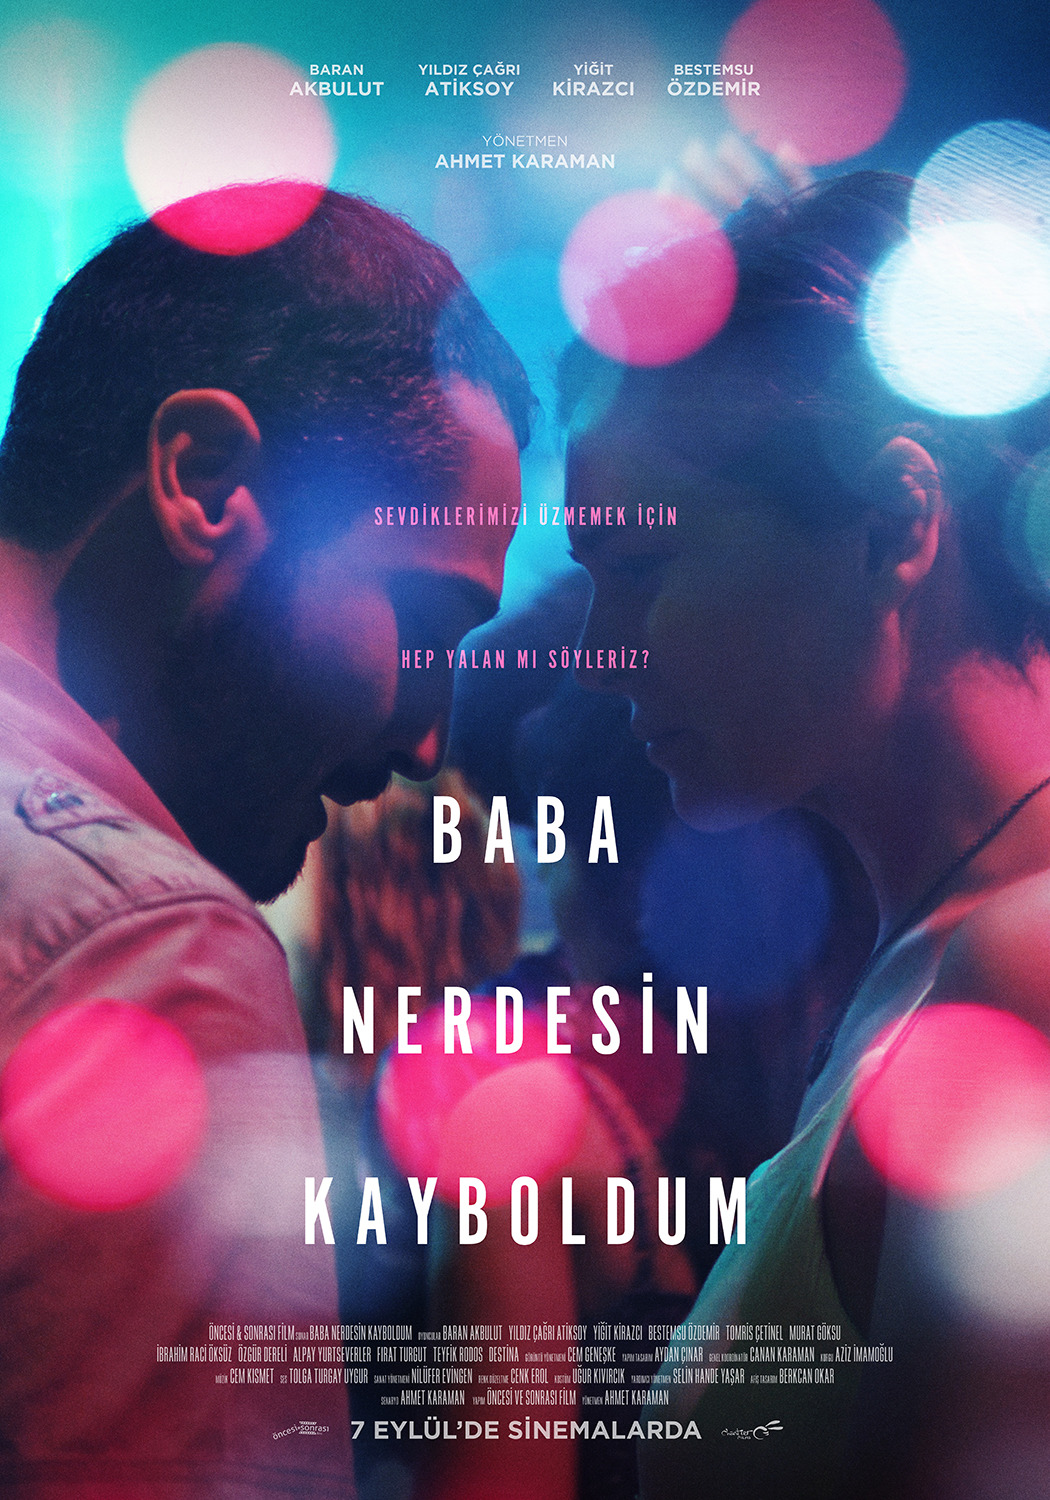 Extra Large Movie Poster Image for Baba Nerdesin Kayboldum (#2 of 5)